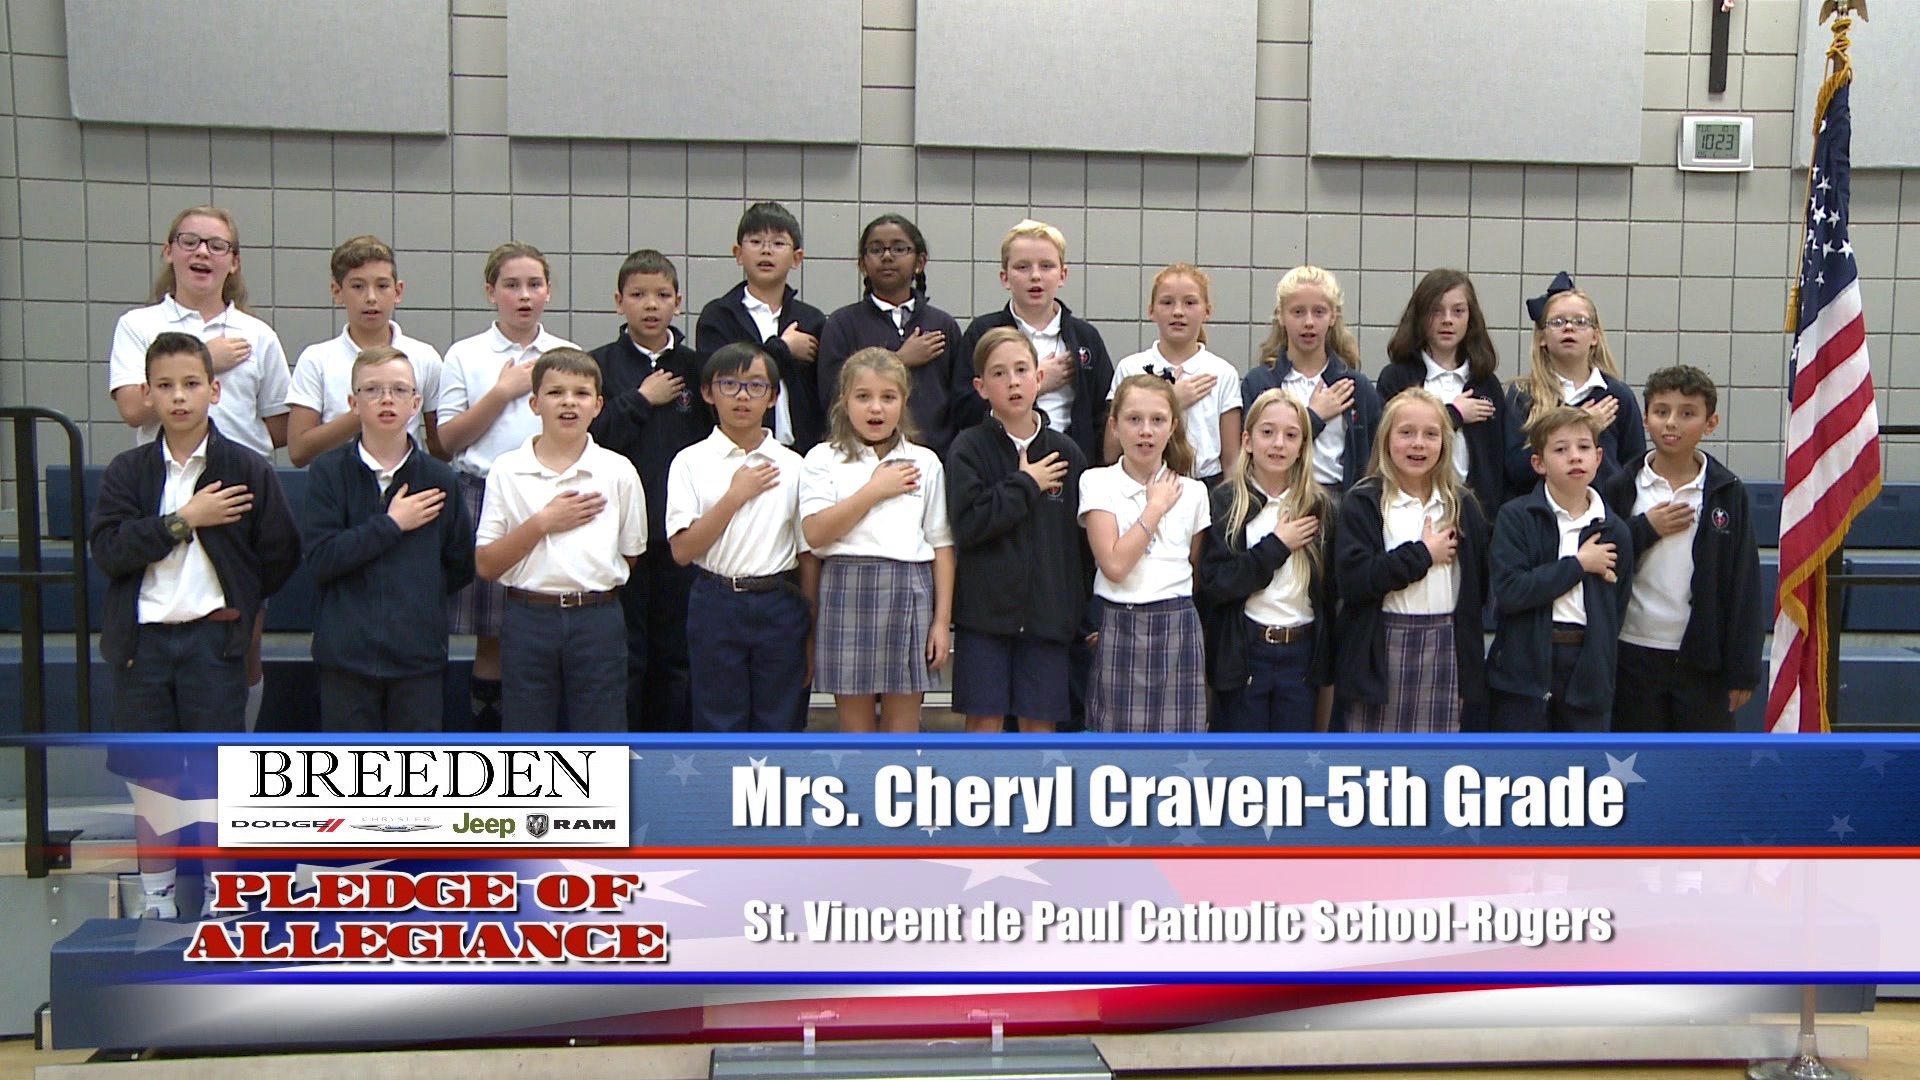 Mrs. Cheryl Craven  5th Grade  St. Vincent de Paul Catholic School  Rogers